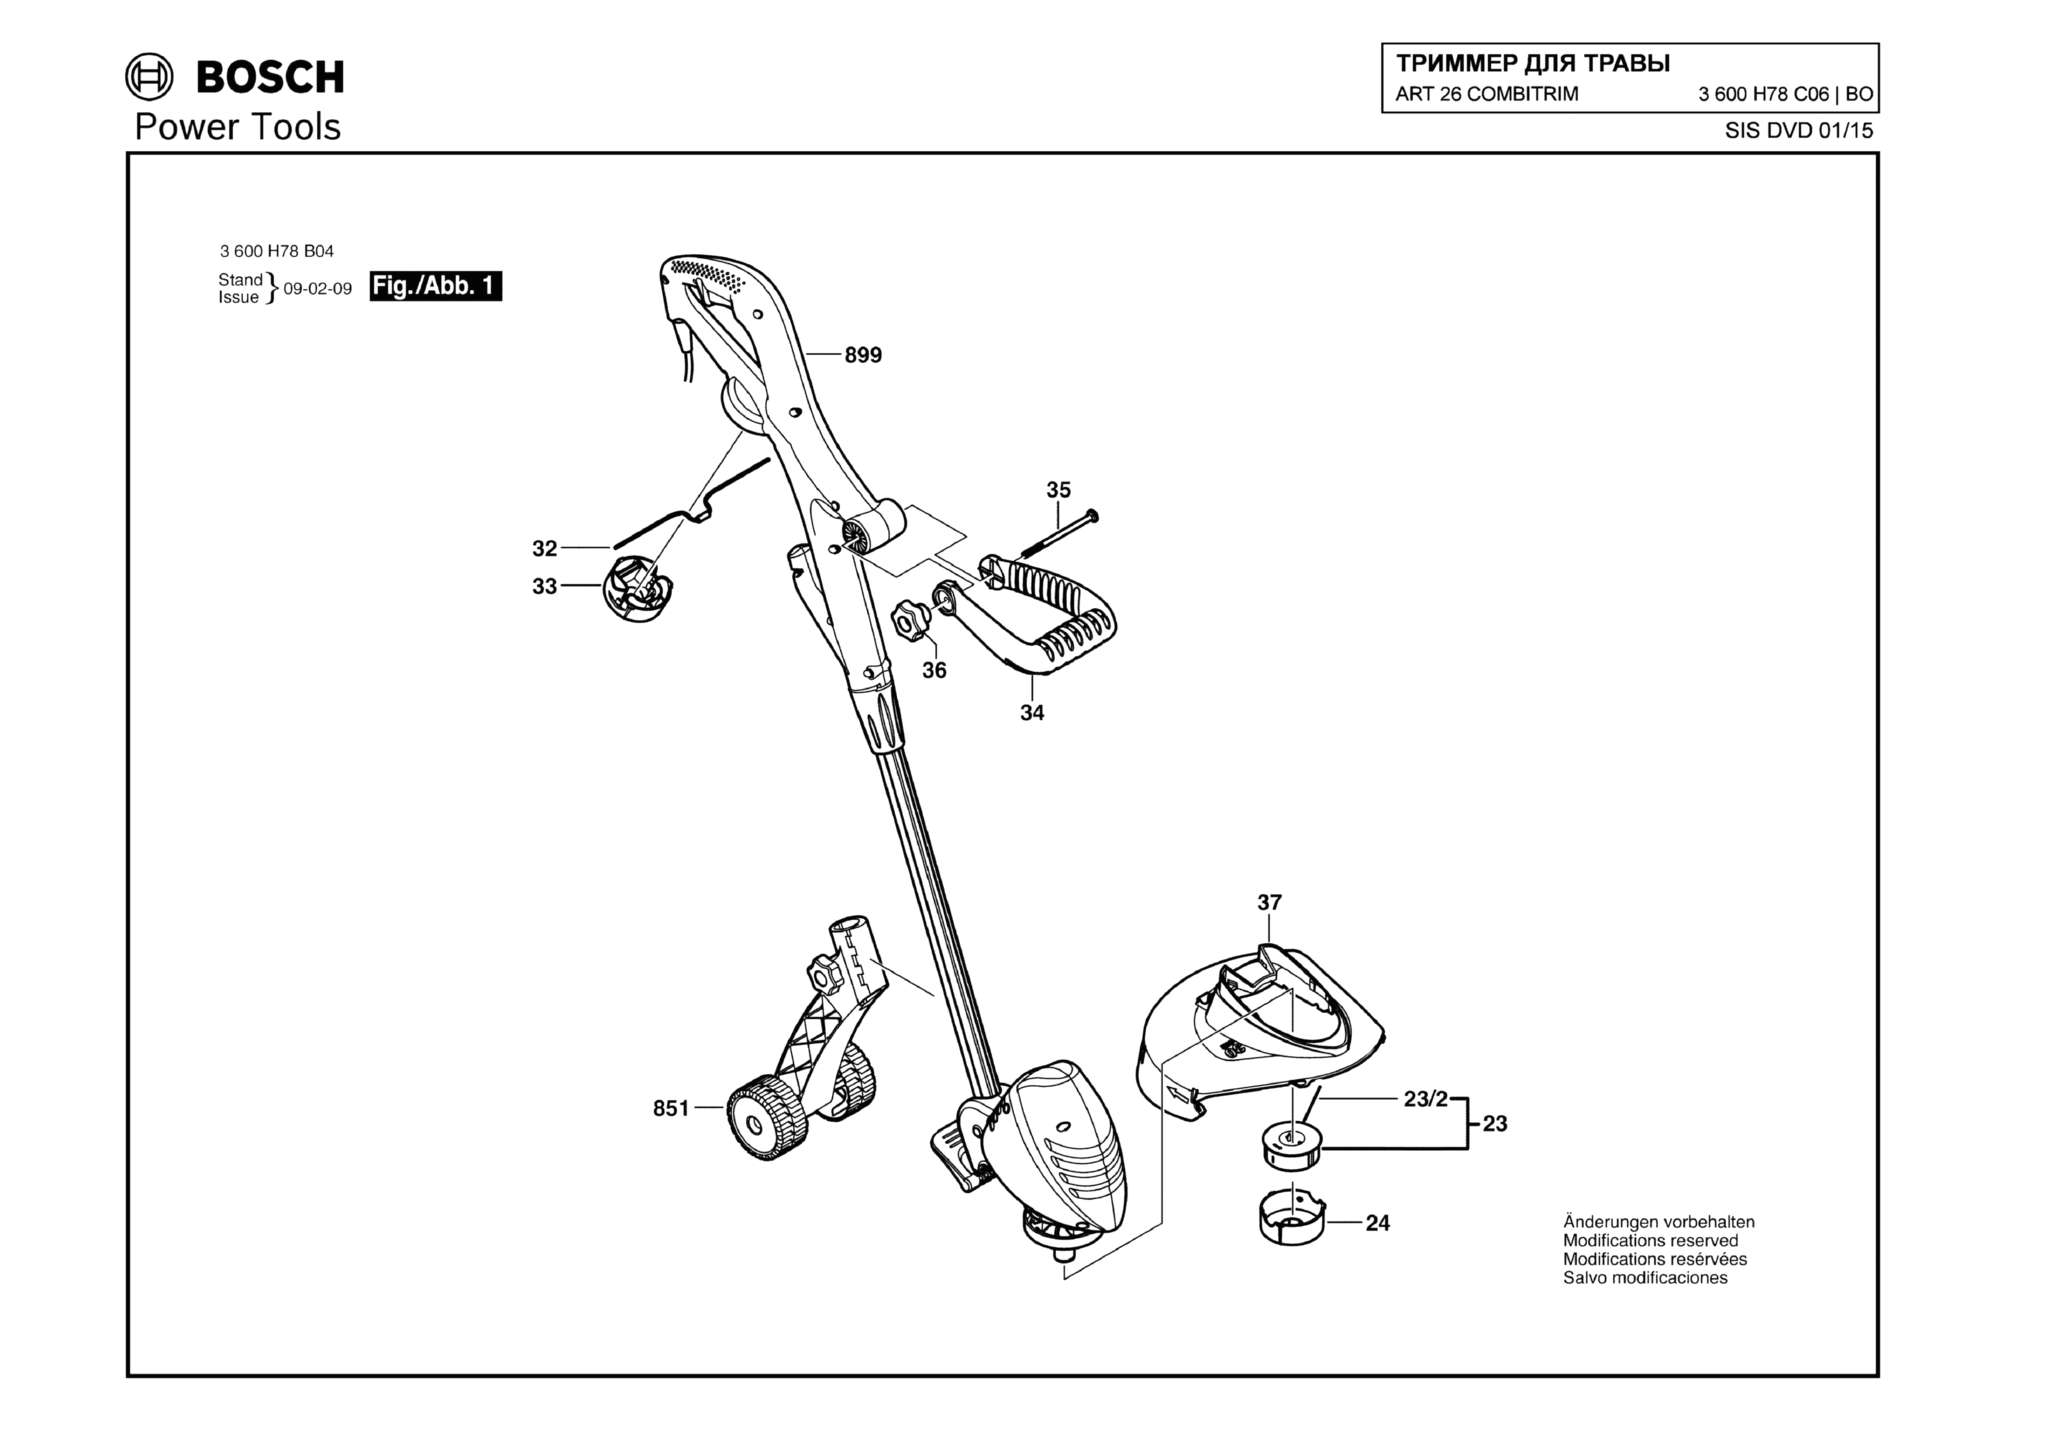 Запчасти, схема и деталировка Bosch ART 26 COMBITRIM (ТИП 3600H78C06)